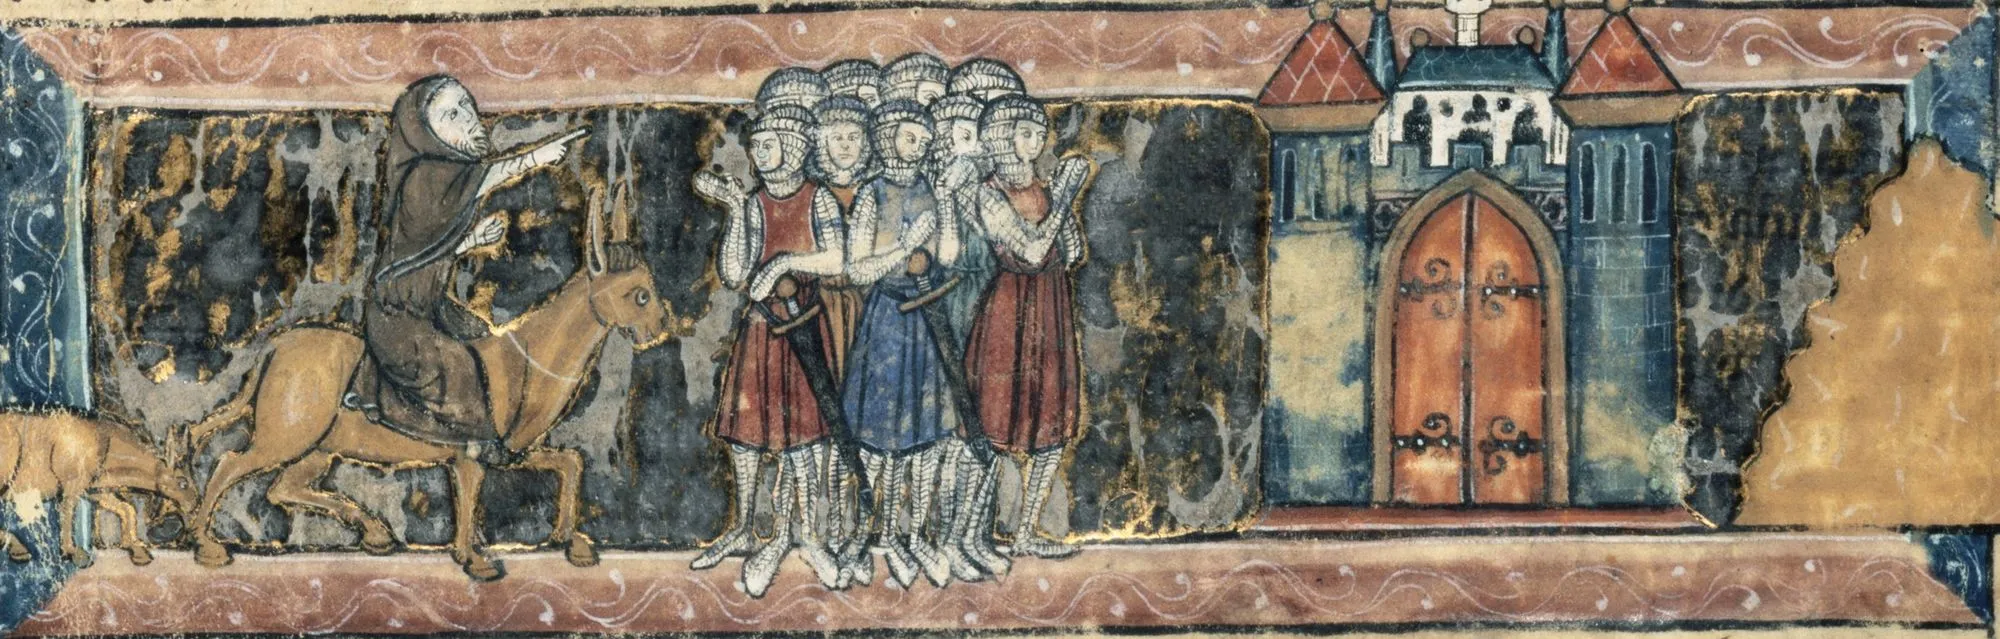 Pierre l'Ermite prêche la croisade, enluminure dans un manuscrit du Roman du Chevalier au Cygne, fin du XIIIe siècle